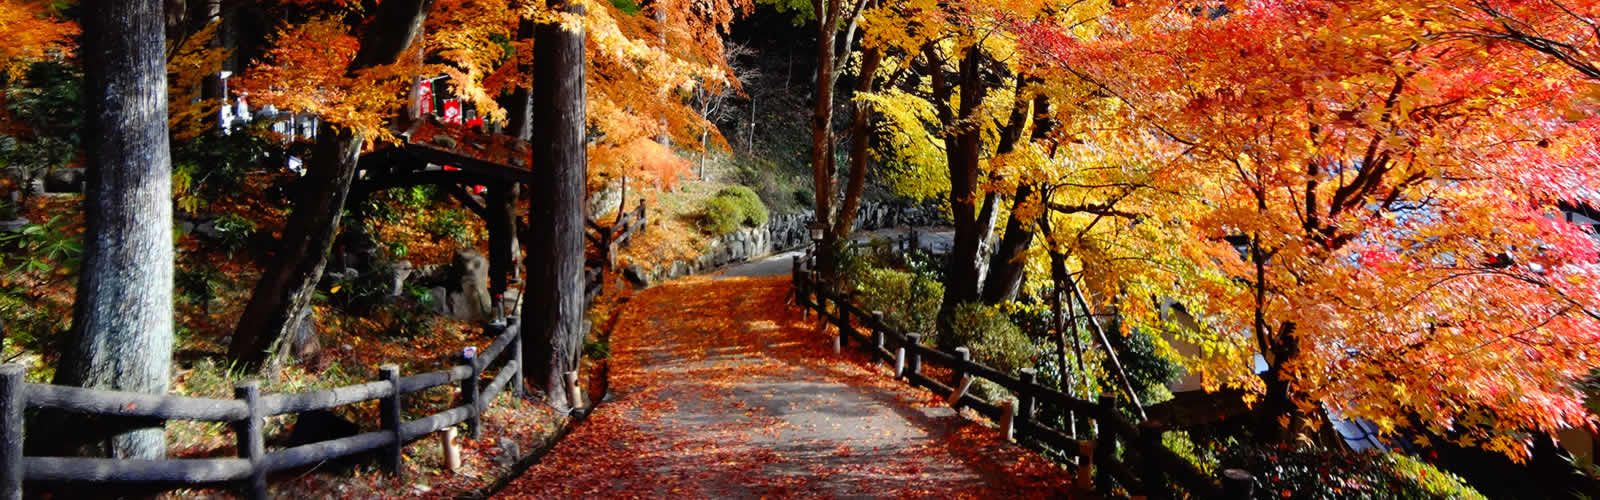 日本三名泉 下呂温泉を満喫 ゆったりと秋旅 楽天トラベル